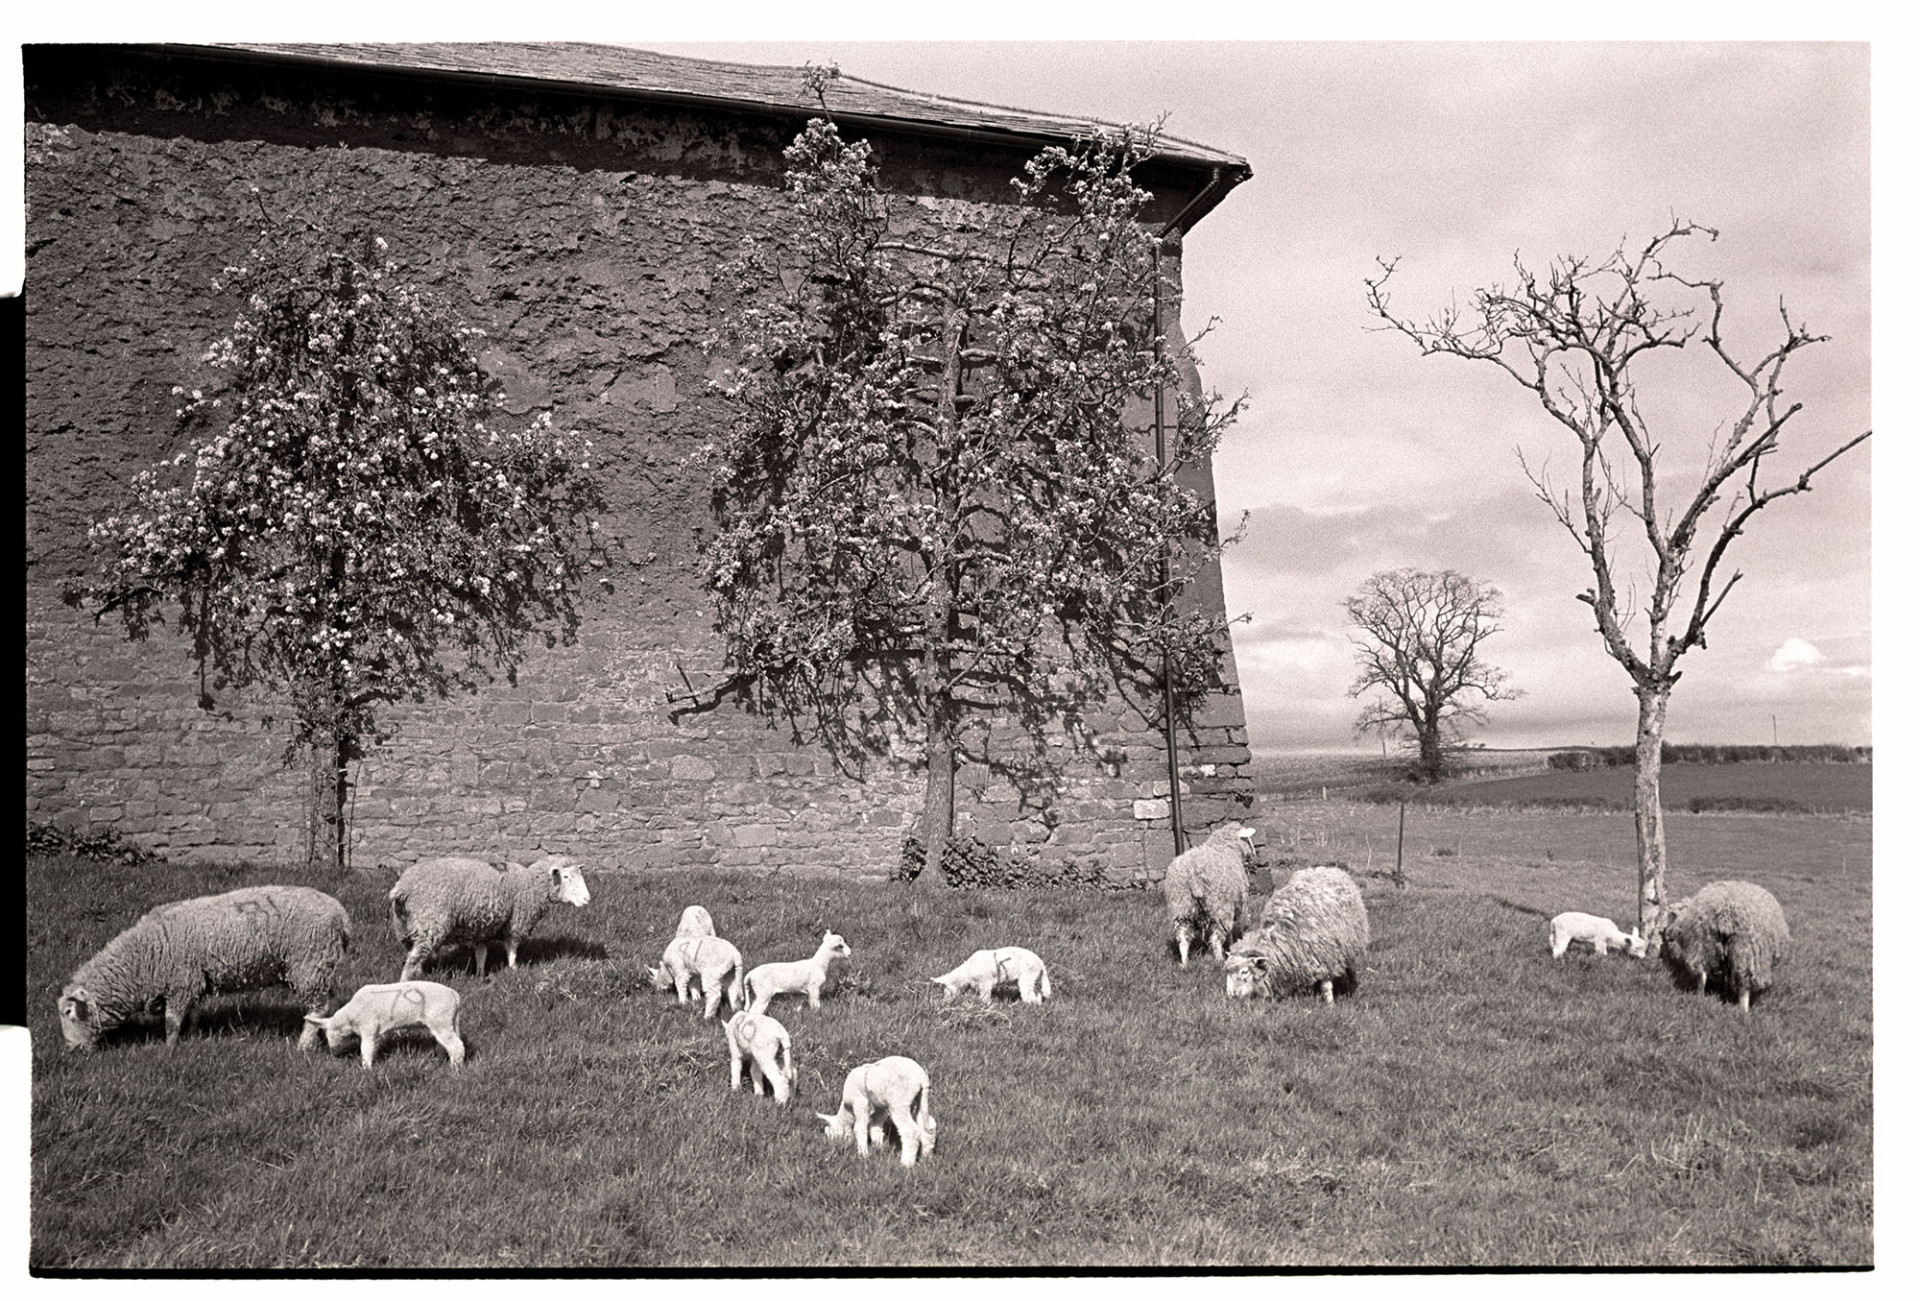 Orchards, espaliered pear tree cob barn wall with grazing sheep and lambs. 
[Espaliered pear trees growing up the cob wall of a barn at Shobrooke. Sheep and lambs are grazing in the orchard by the trees.]